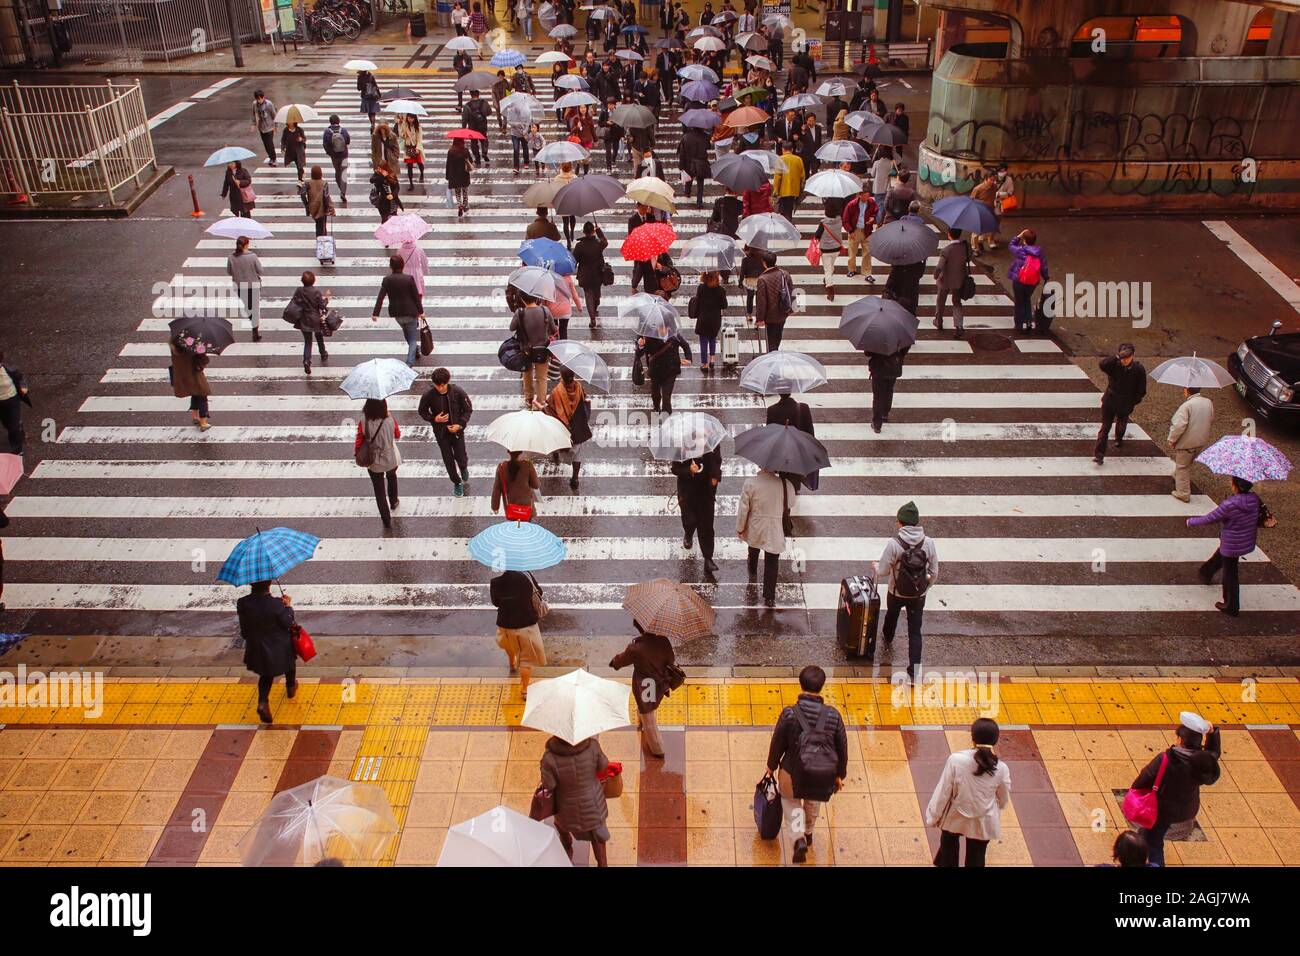 TOKYO, JAPON - 25 NOVEMBRE 2014 : Les gens de marcher sous la pluie dans un passage pour piétons à Tokyo, Japon. Banque D'Images